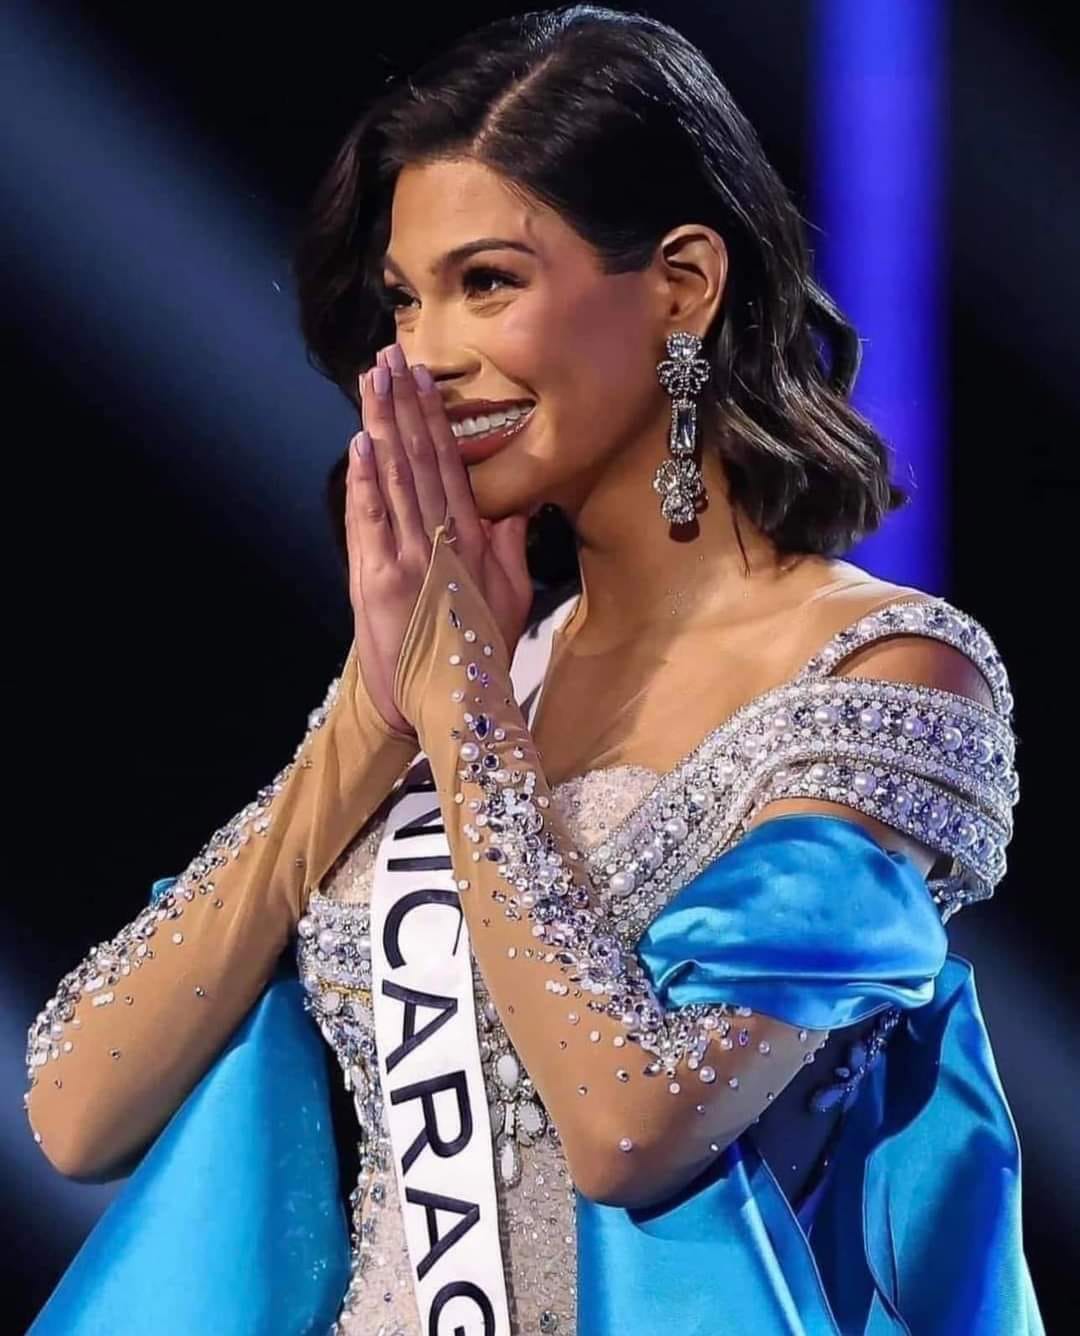 Policía de Nicaragua desmiente acusaciones contra Miss Universo